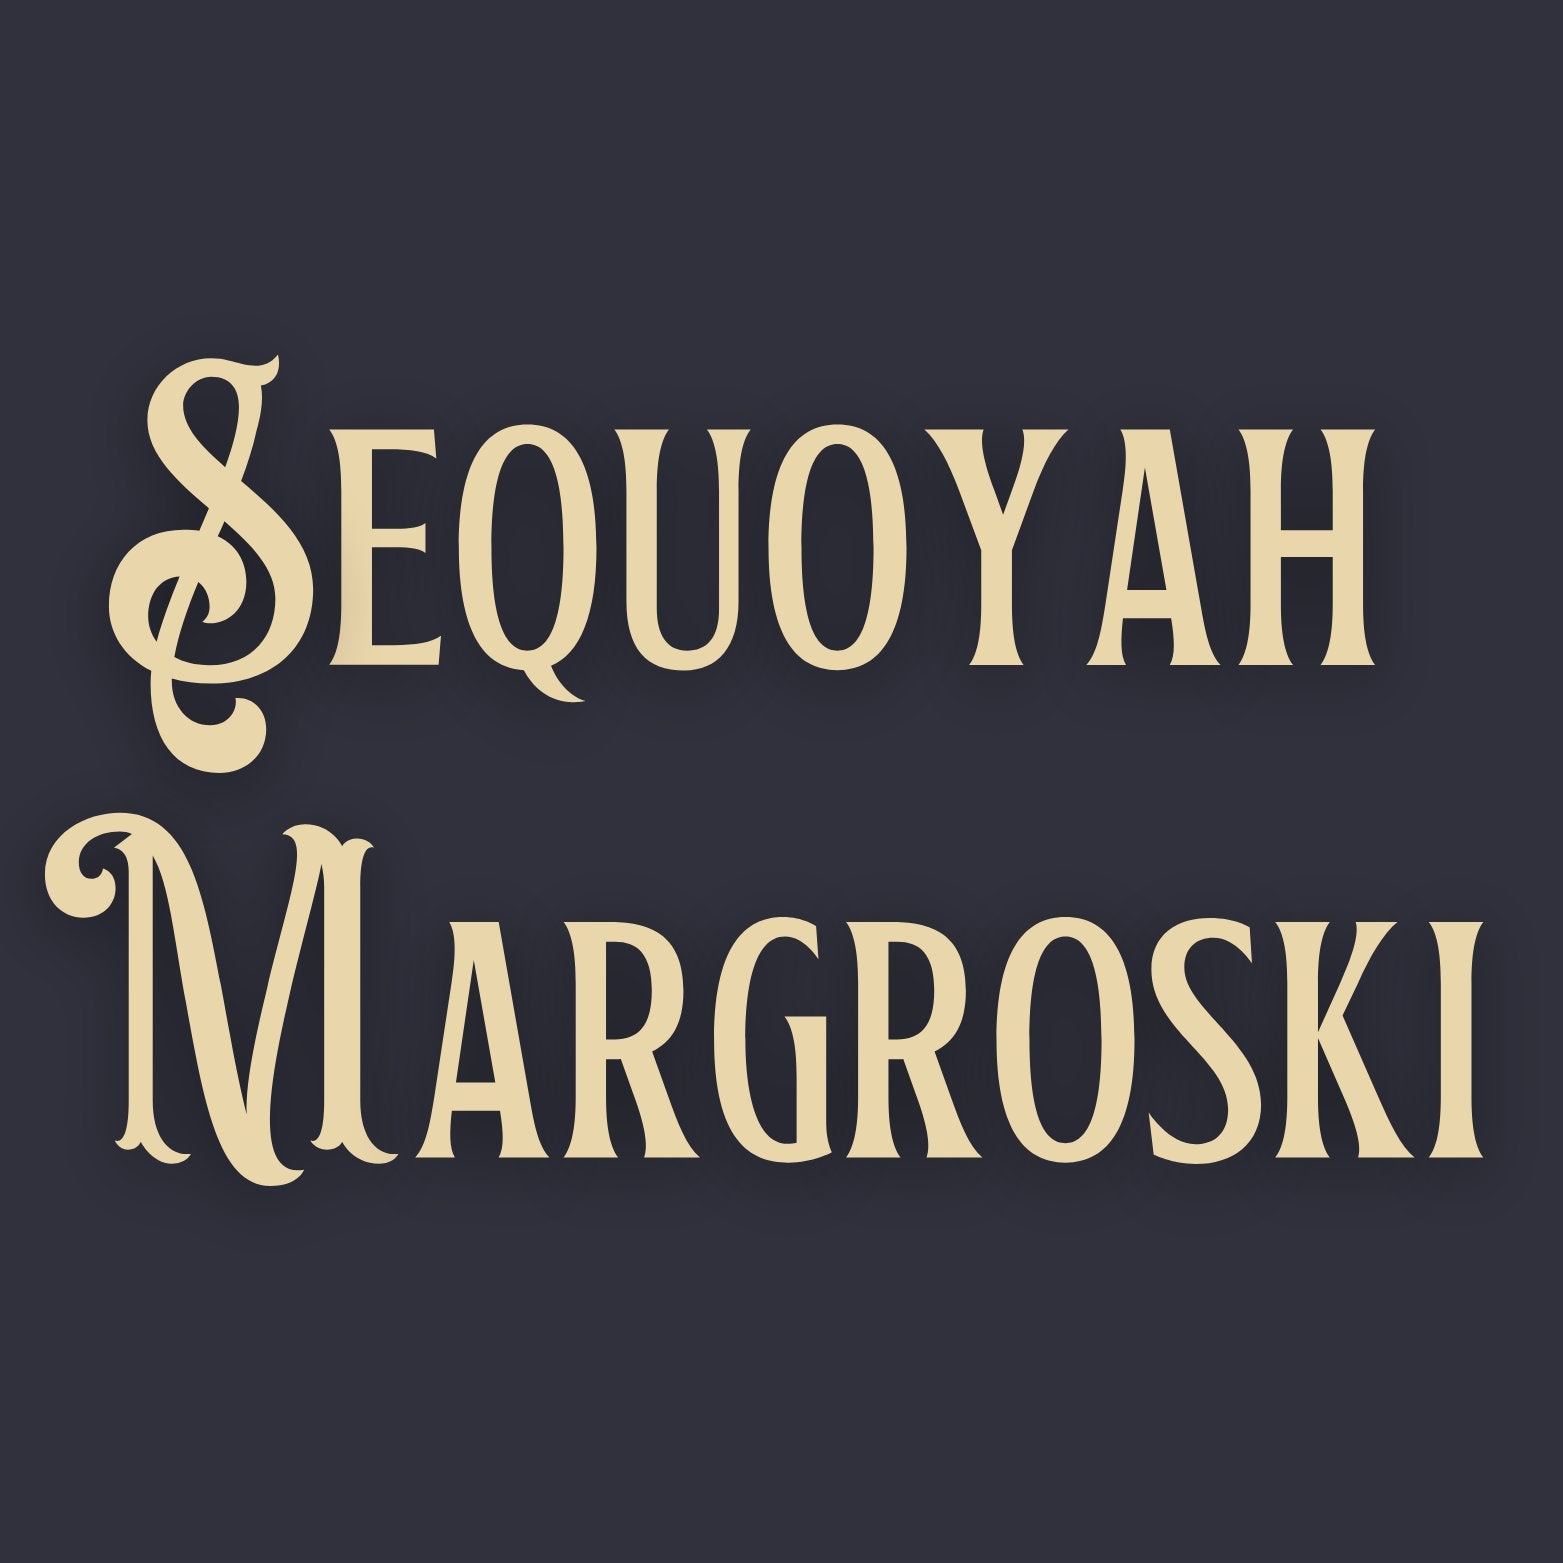 Featured Artist! Sequoyah Margroski